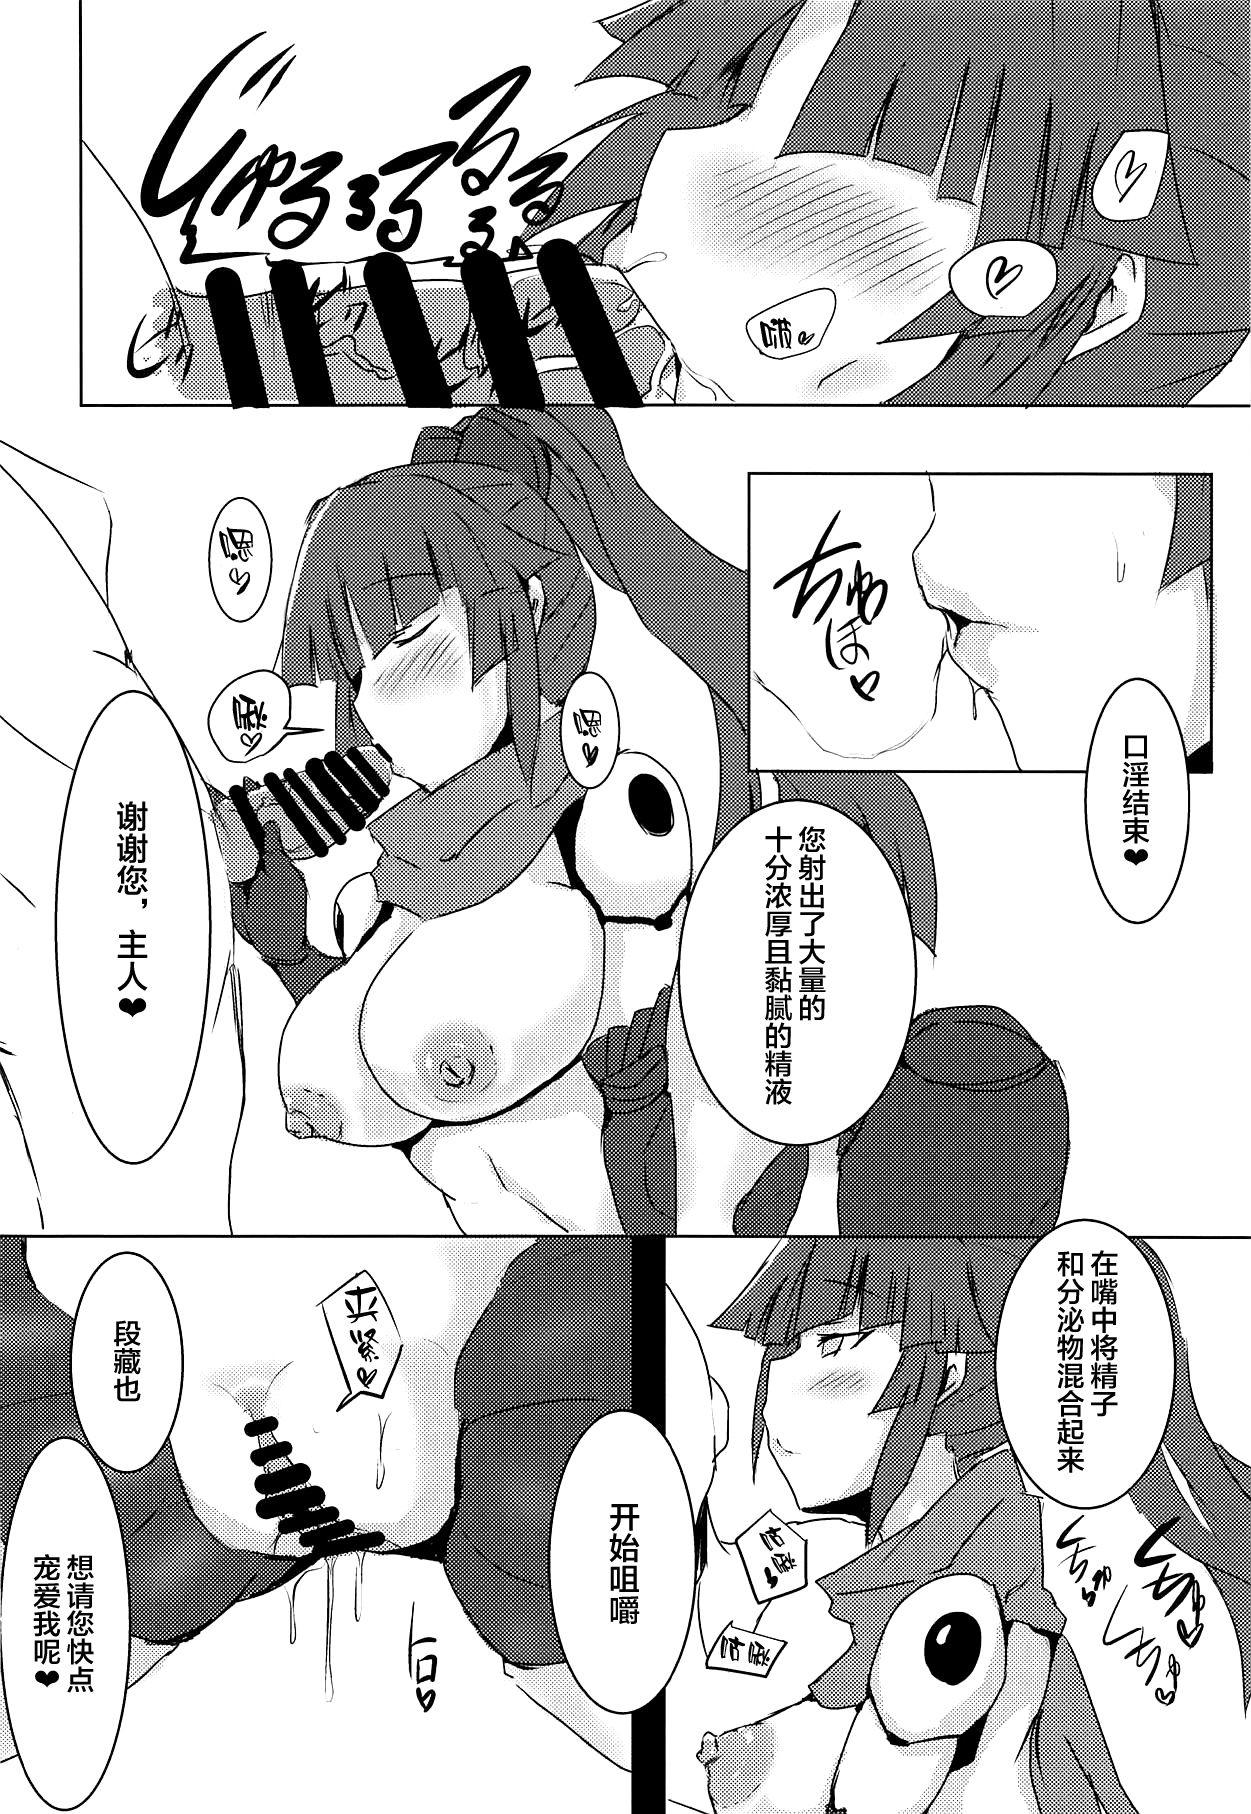 Story Kizuna 10. ☆4 Saba Itadakimasu - Fate grand order Reality Porn - Page 8